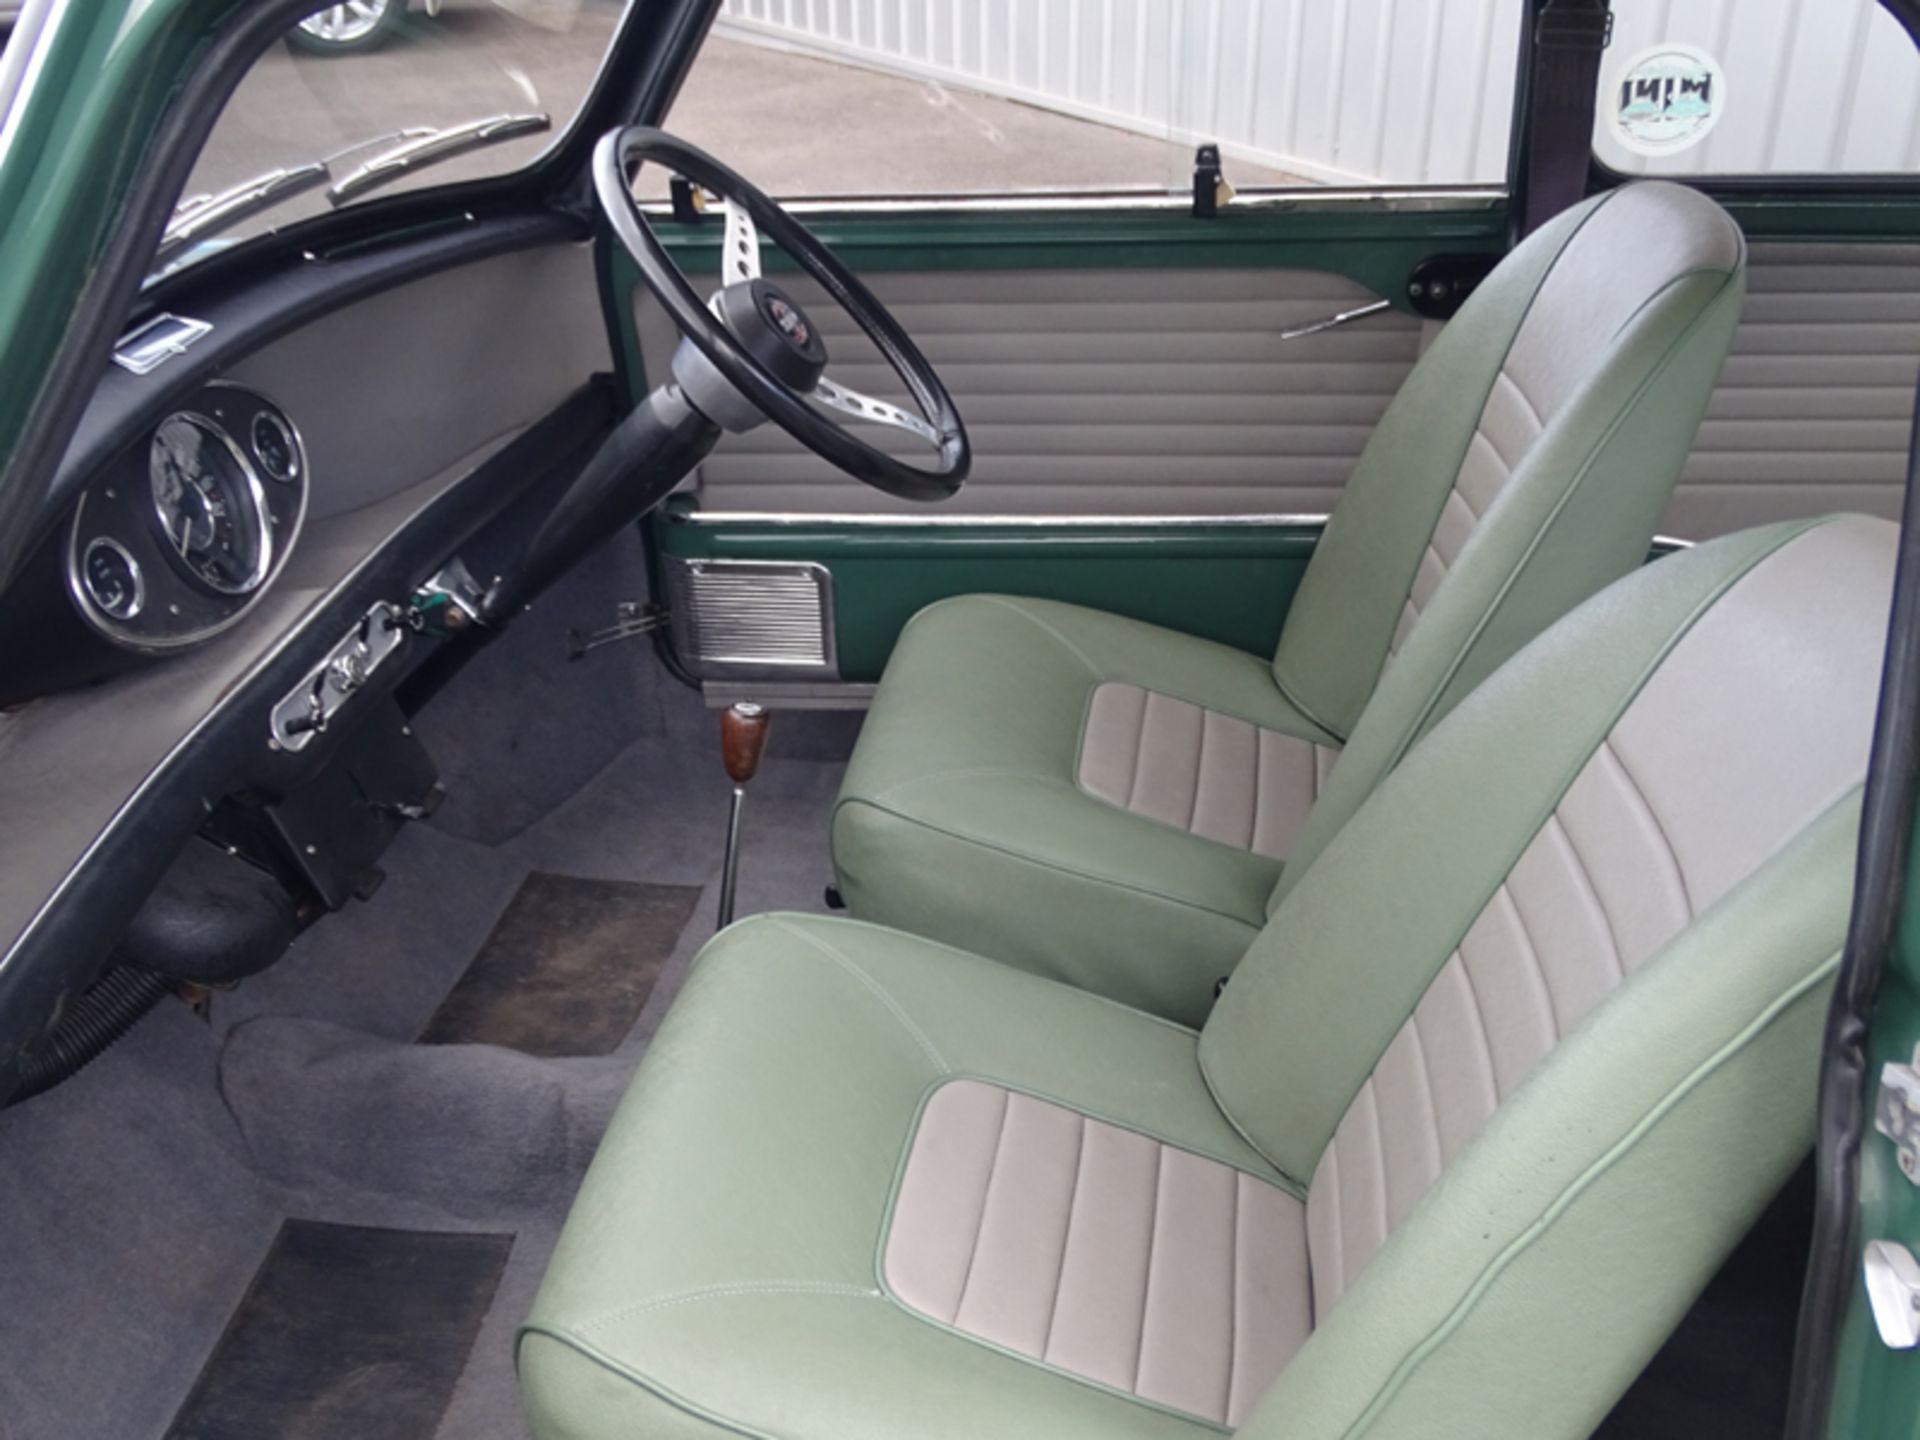 1966 Austin Mini Cooper S - Image 6 of 9